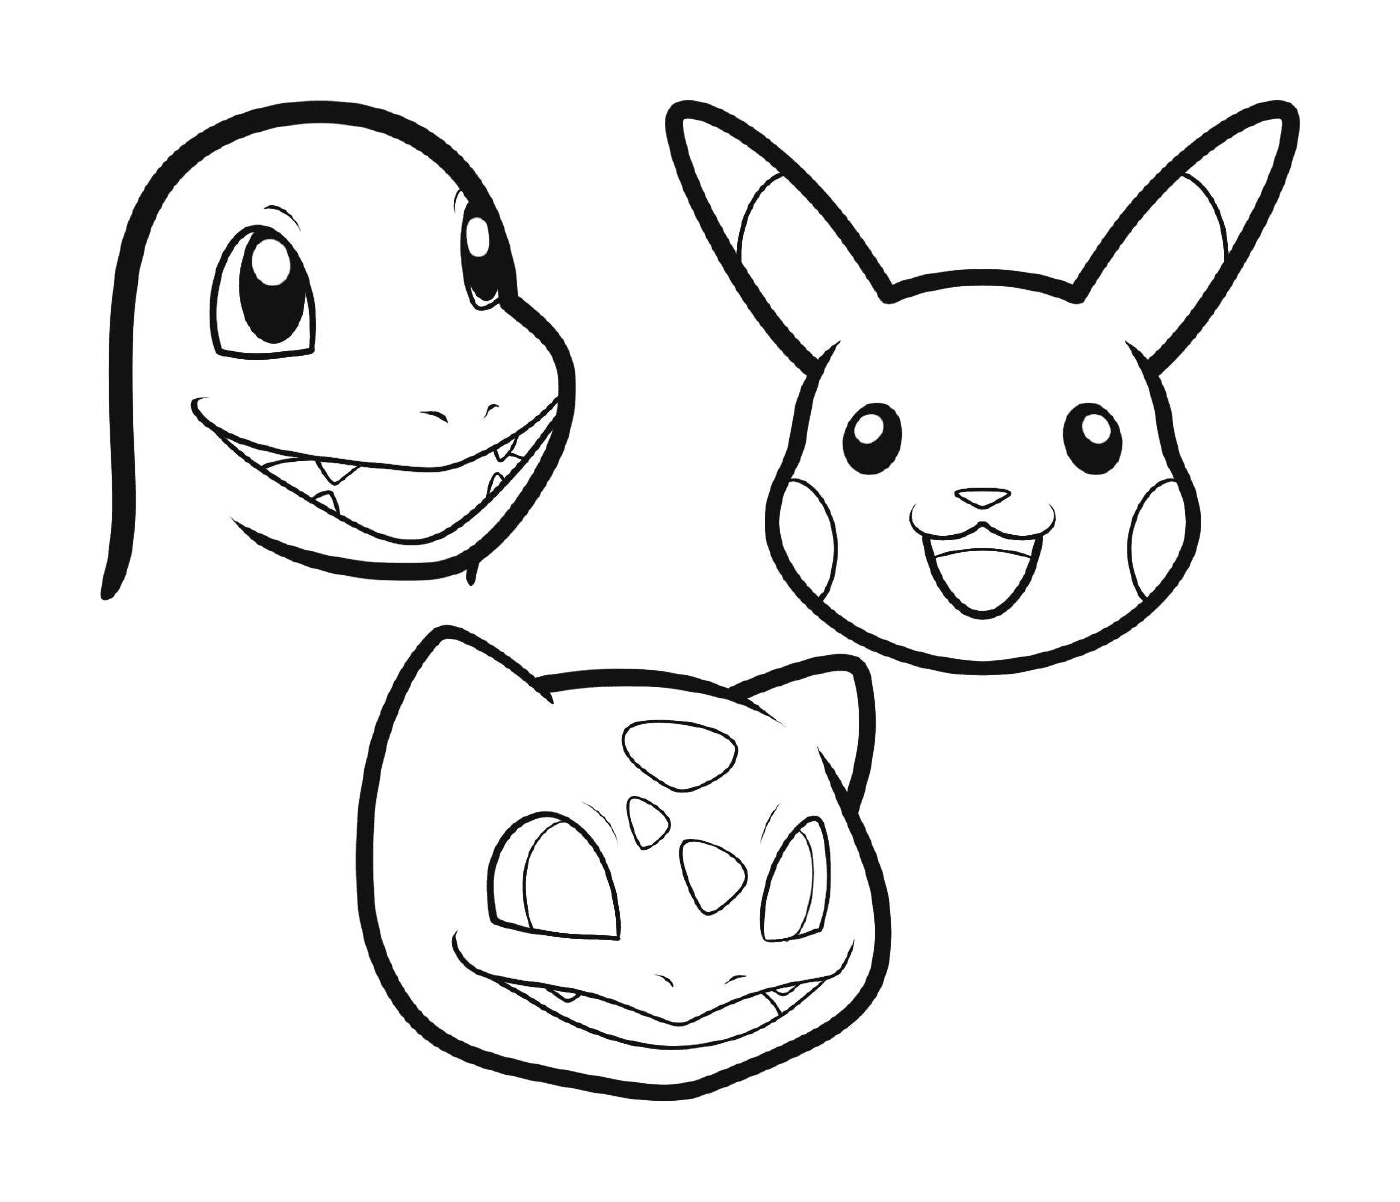  Ein Satz von drei Karikaturen, die eine Pikachu, eine Salamèche und eine Karapuce darstellen 